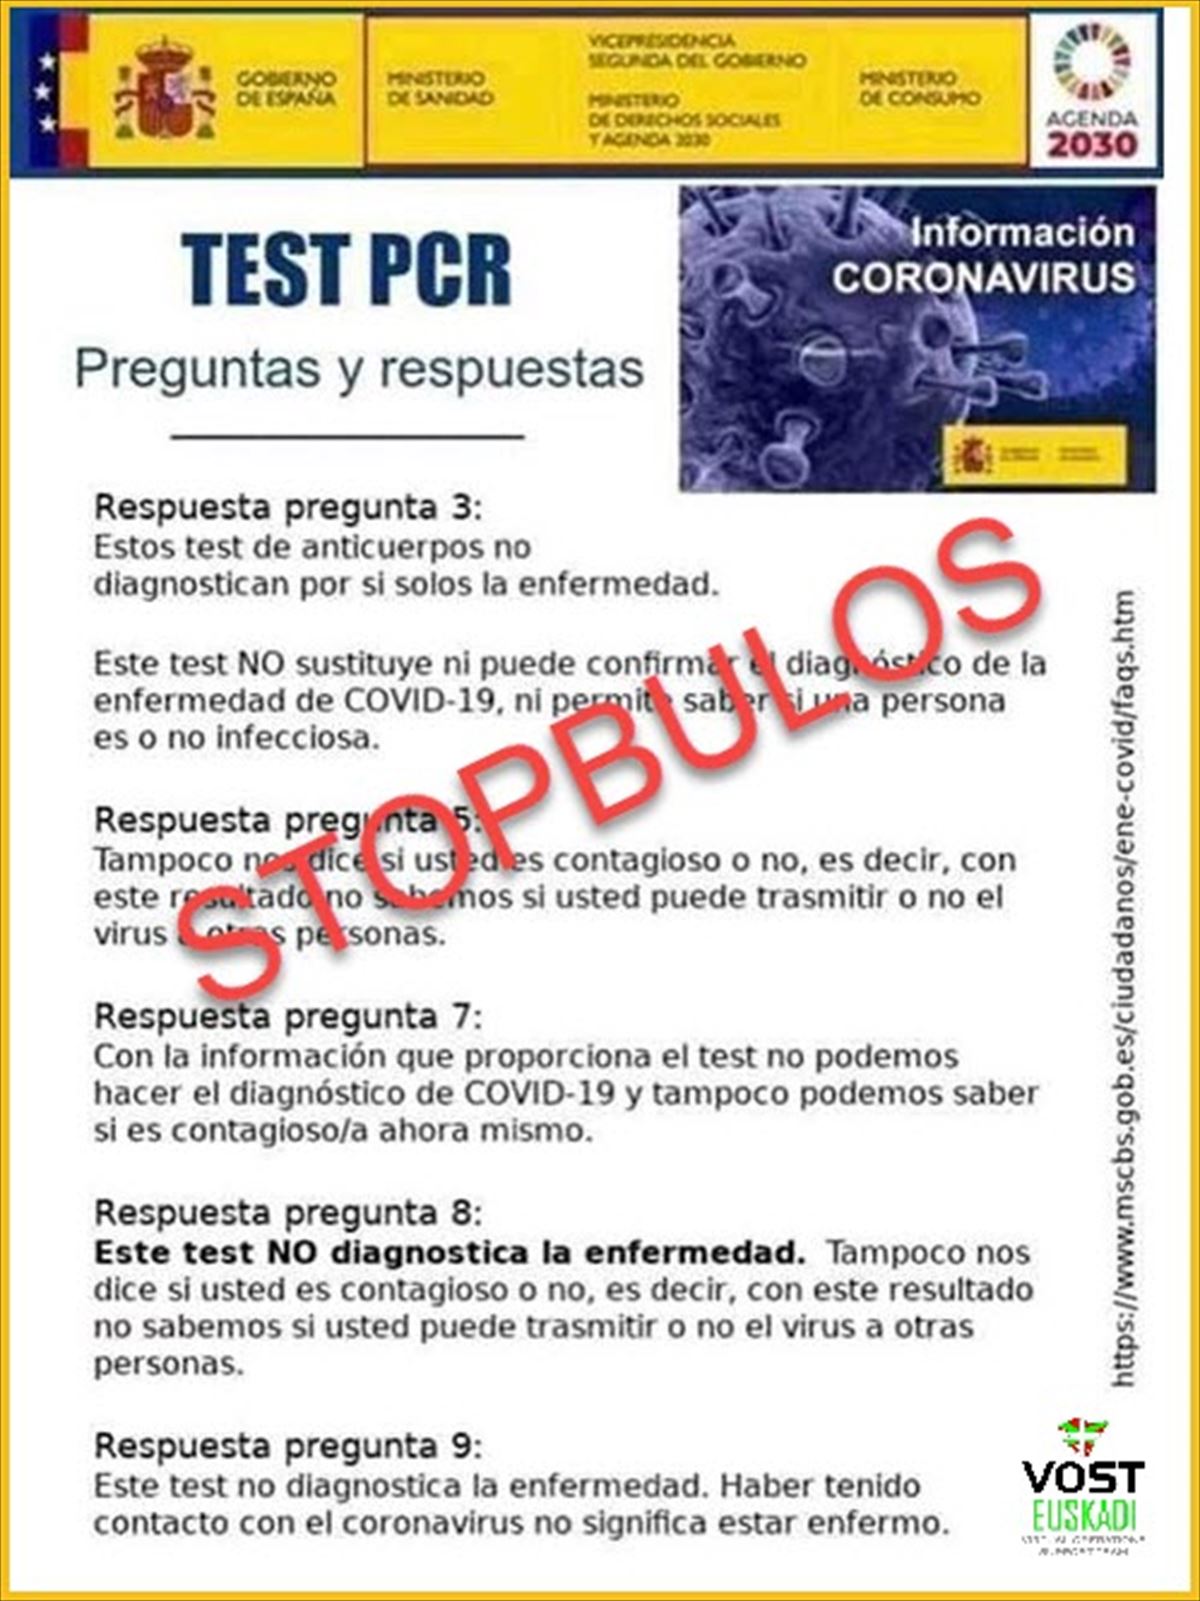 PCRei buruzko gezurrezko irudia. Argazkia: Vost Euskadi.